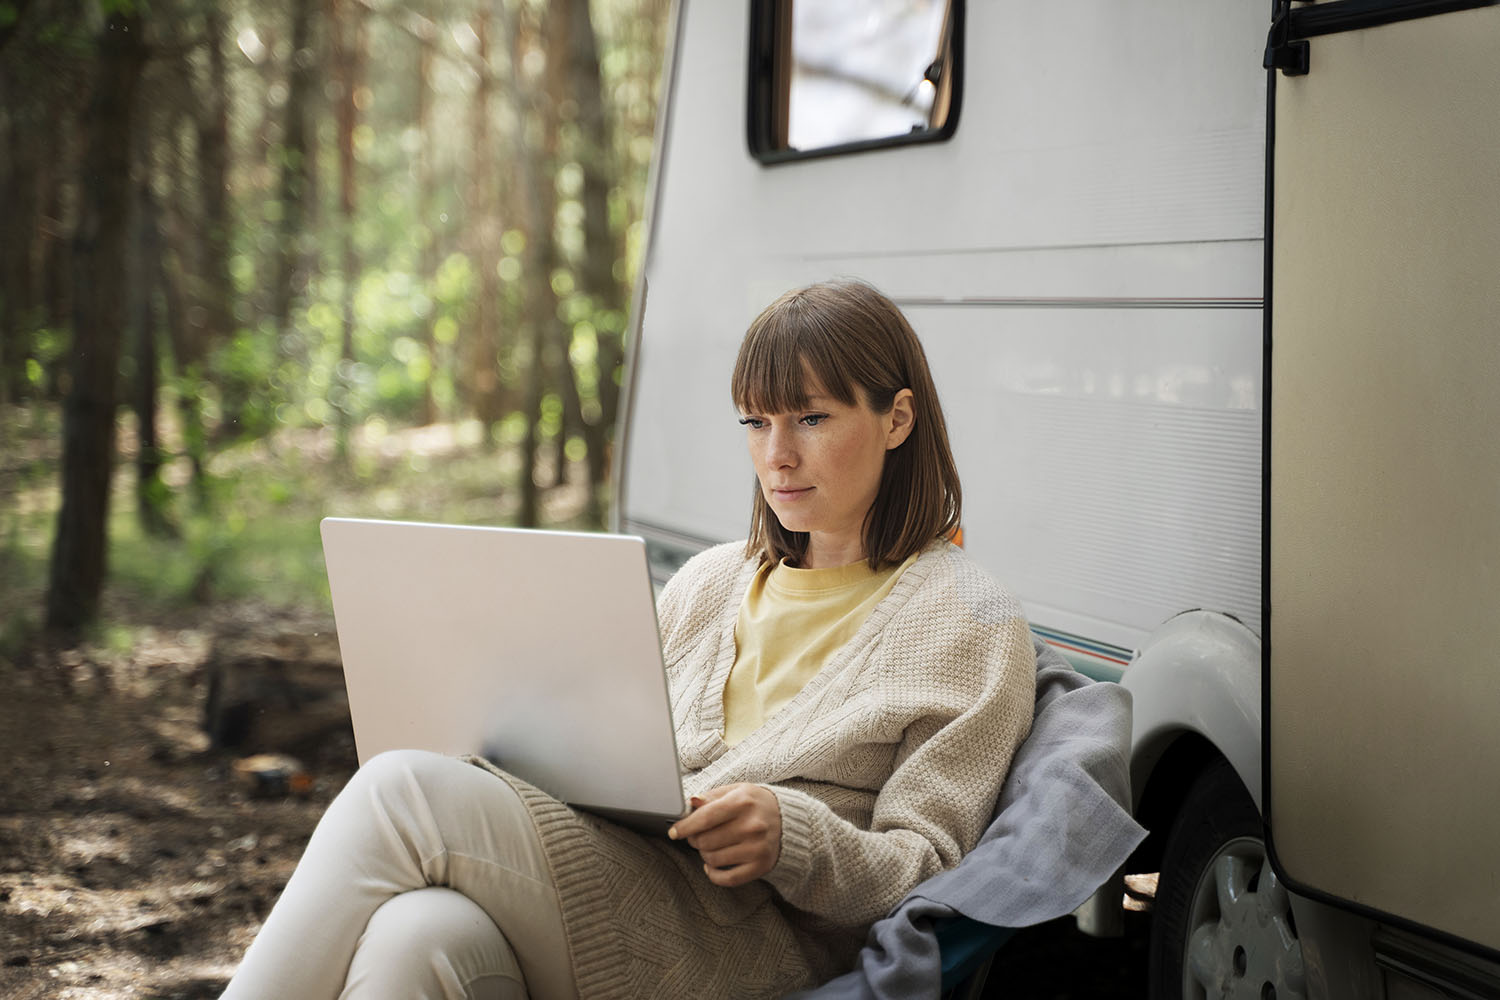 Kobieta siedzi obok kampera z laptopem na nogach